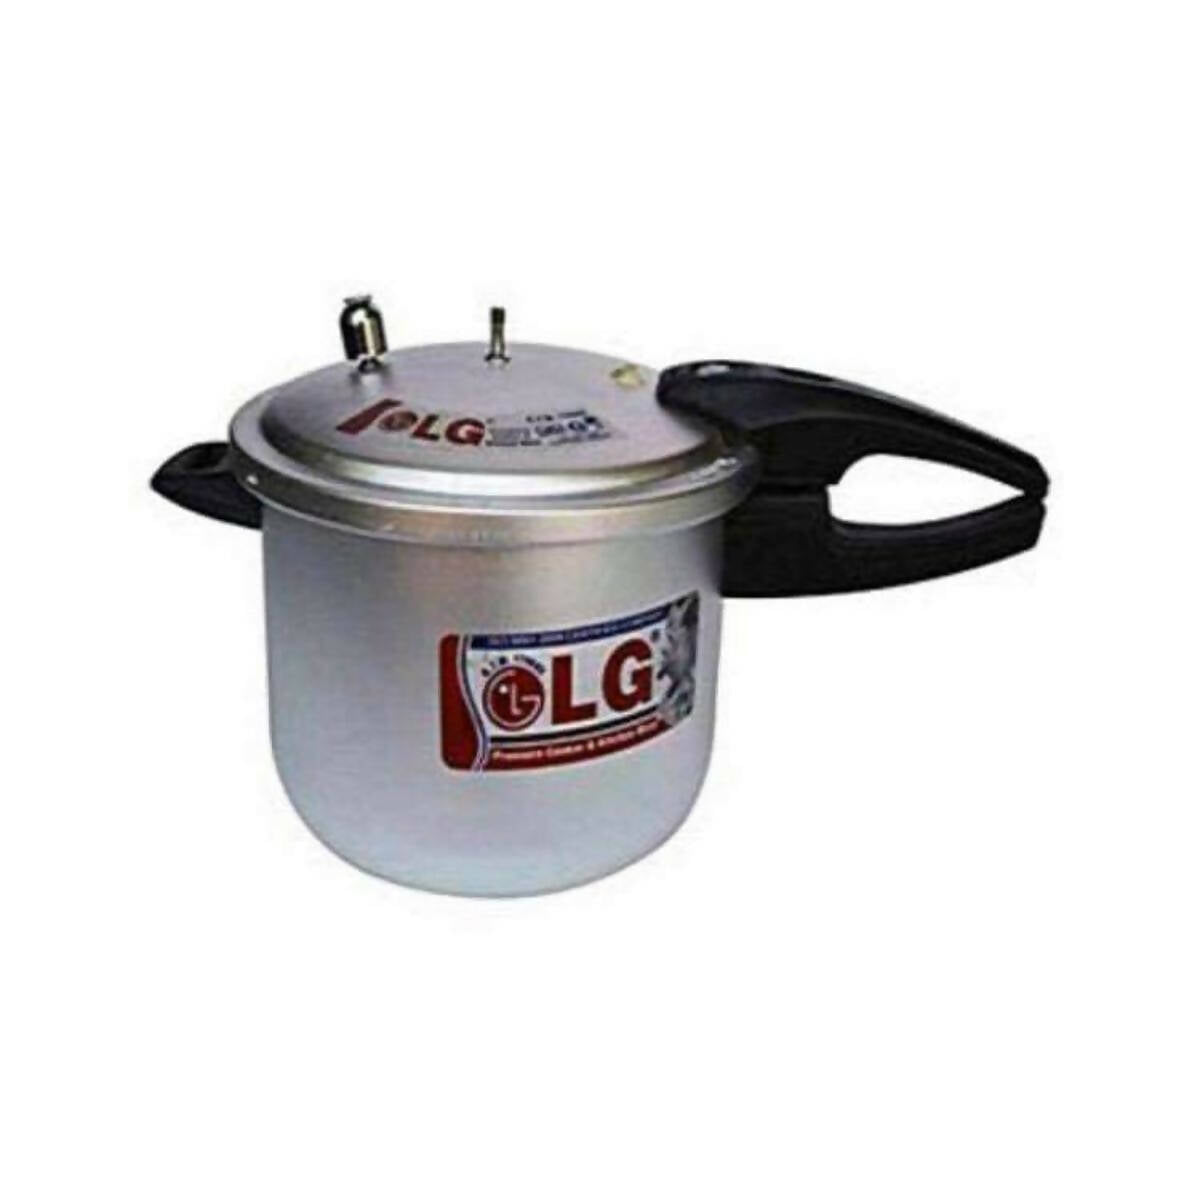 L.G Pressure Cooker - 11 Liter